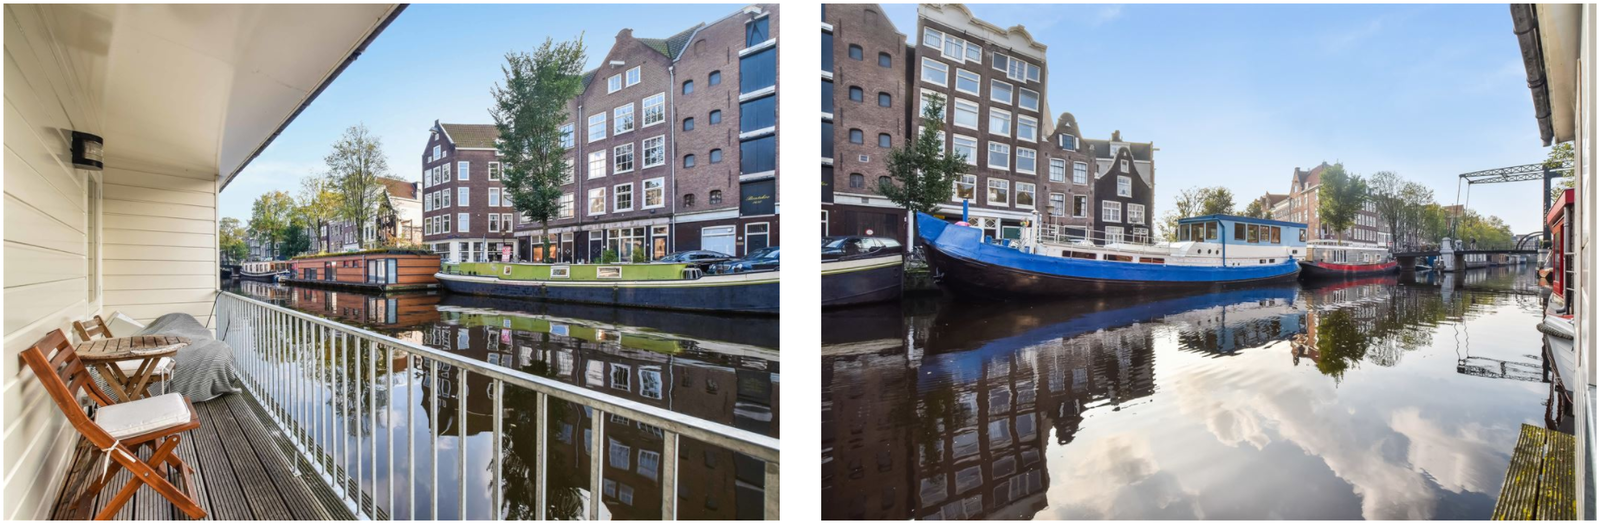 Дом на воде амстердам снять продажа недвижимости за границей